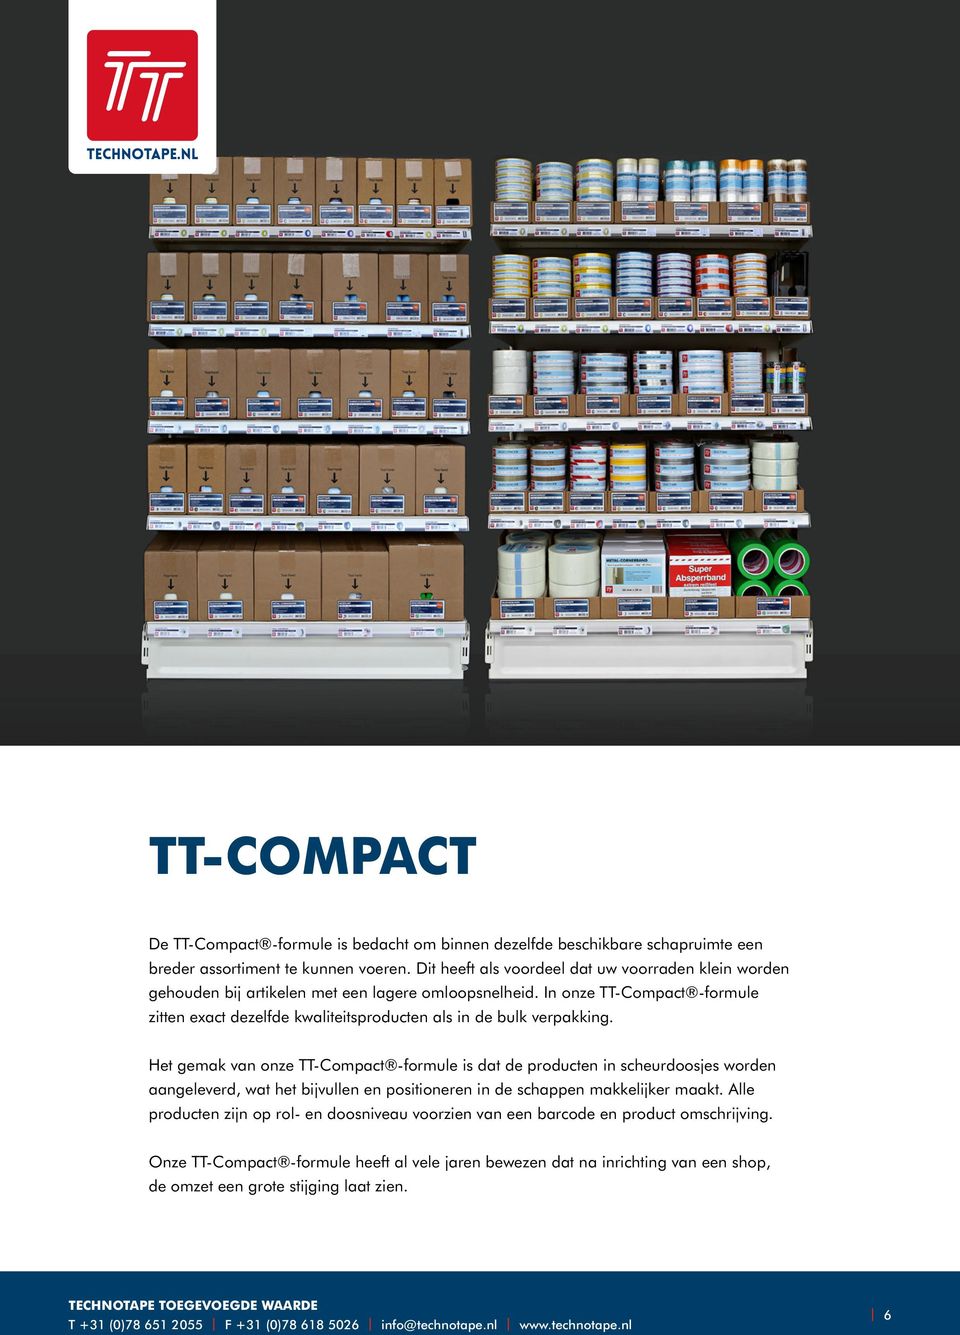 In onze TT-Compact -formule zitten exact dezelfde kwaliteitsproducten als in de bulk verpakking.